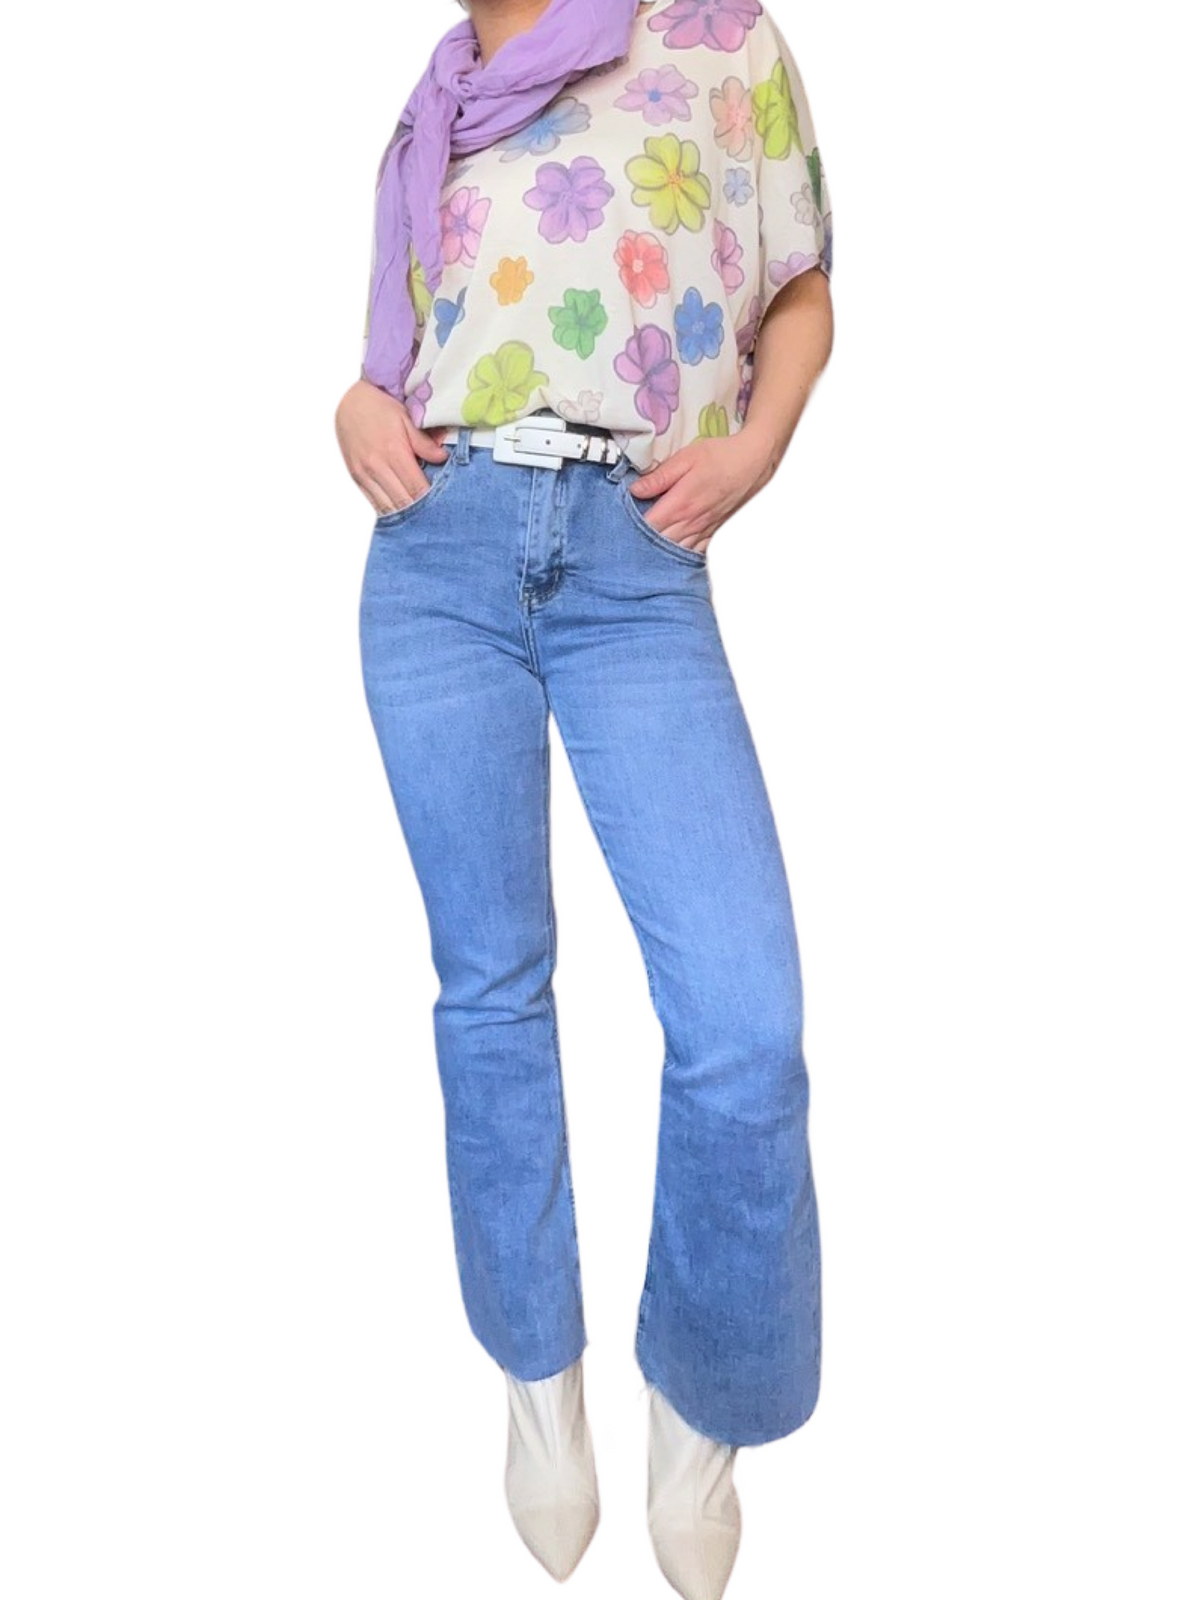 T-shirt blanc pour femme avec imprimé de fleurs multicolores avec jeans flare et bottes blanches. 